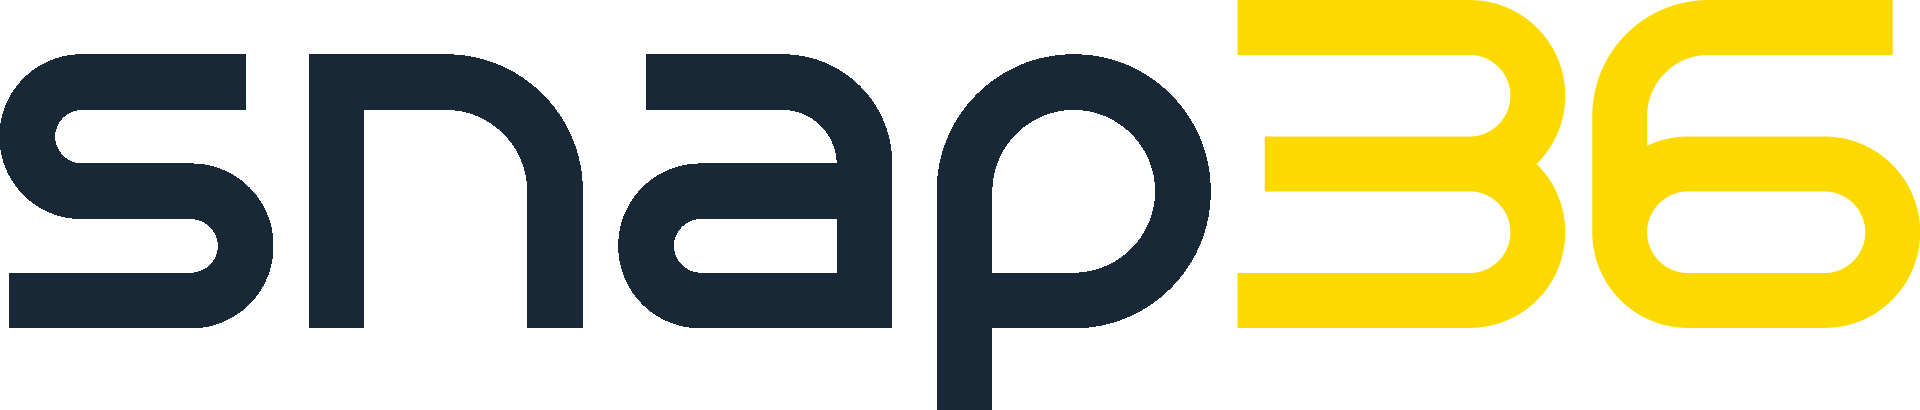 Snap36_Logo.png